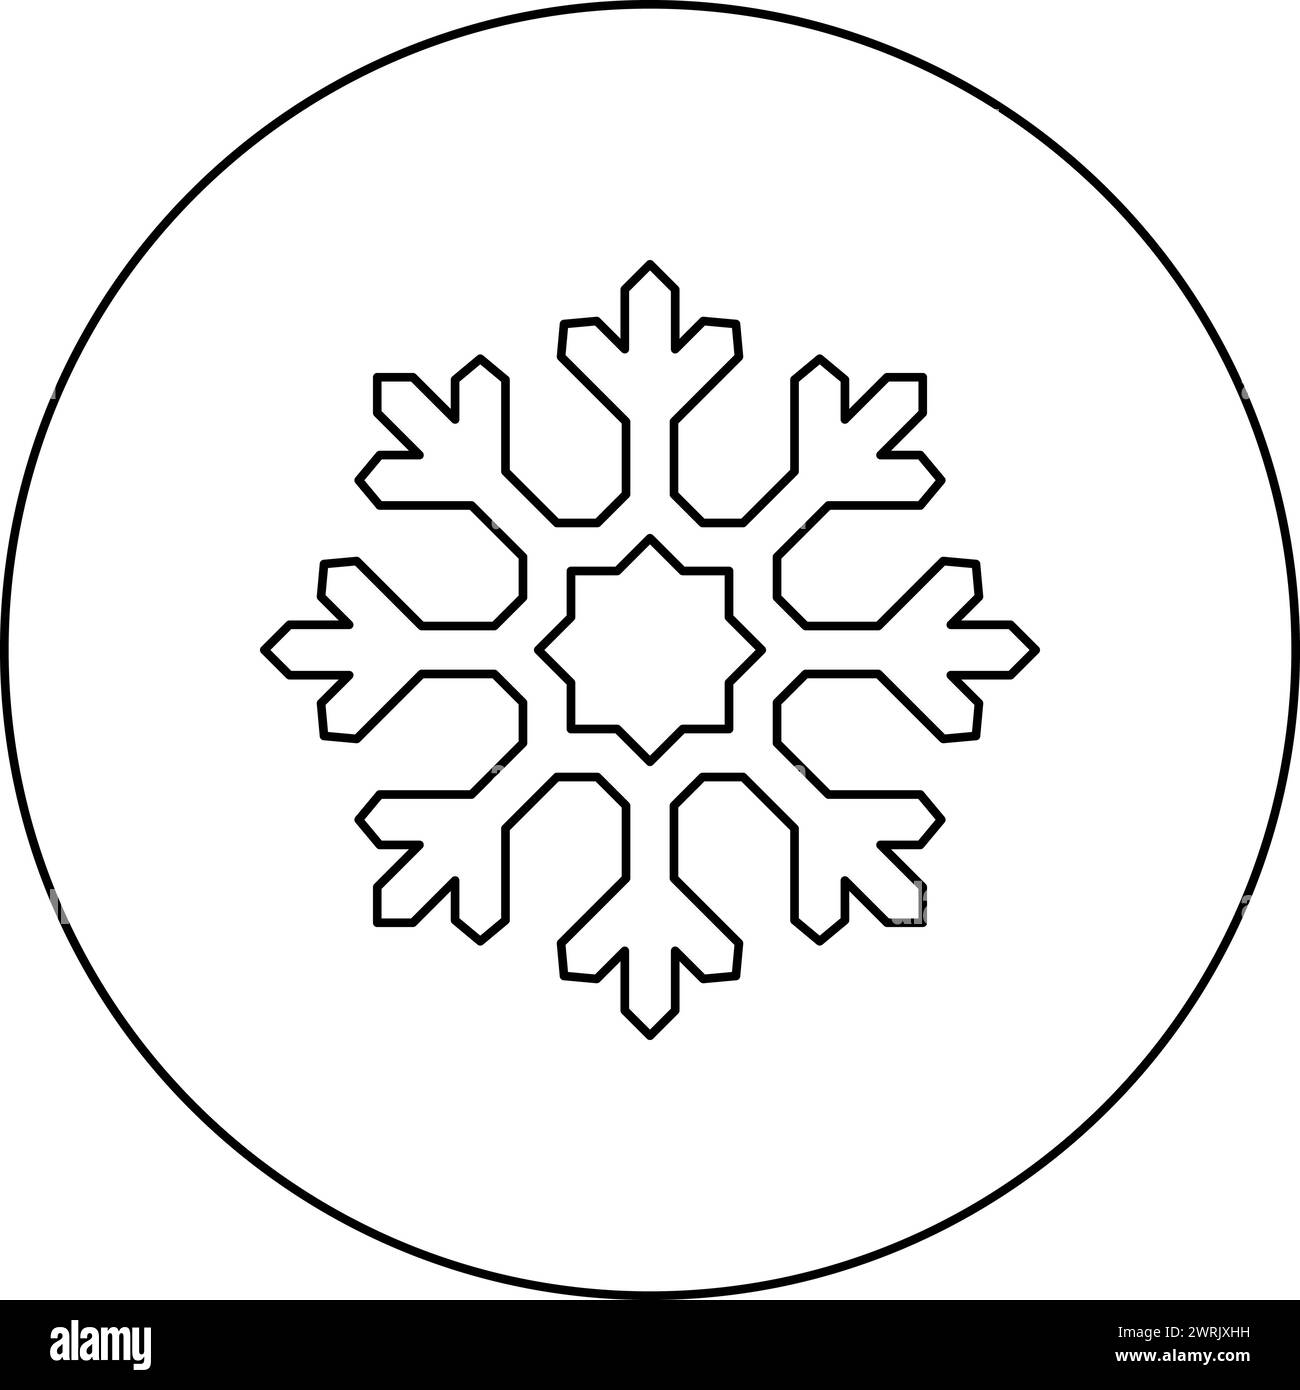 Icona del fiocco di neve in cerchio, colore nero, immagine vettoriale, contorno linea di contorno, stile sottile semplice Illustrazione Vettoriale